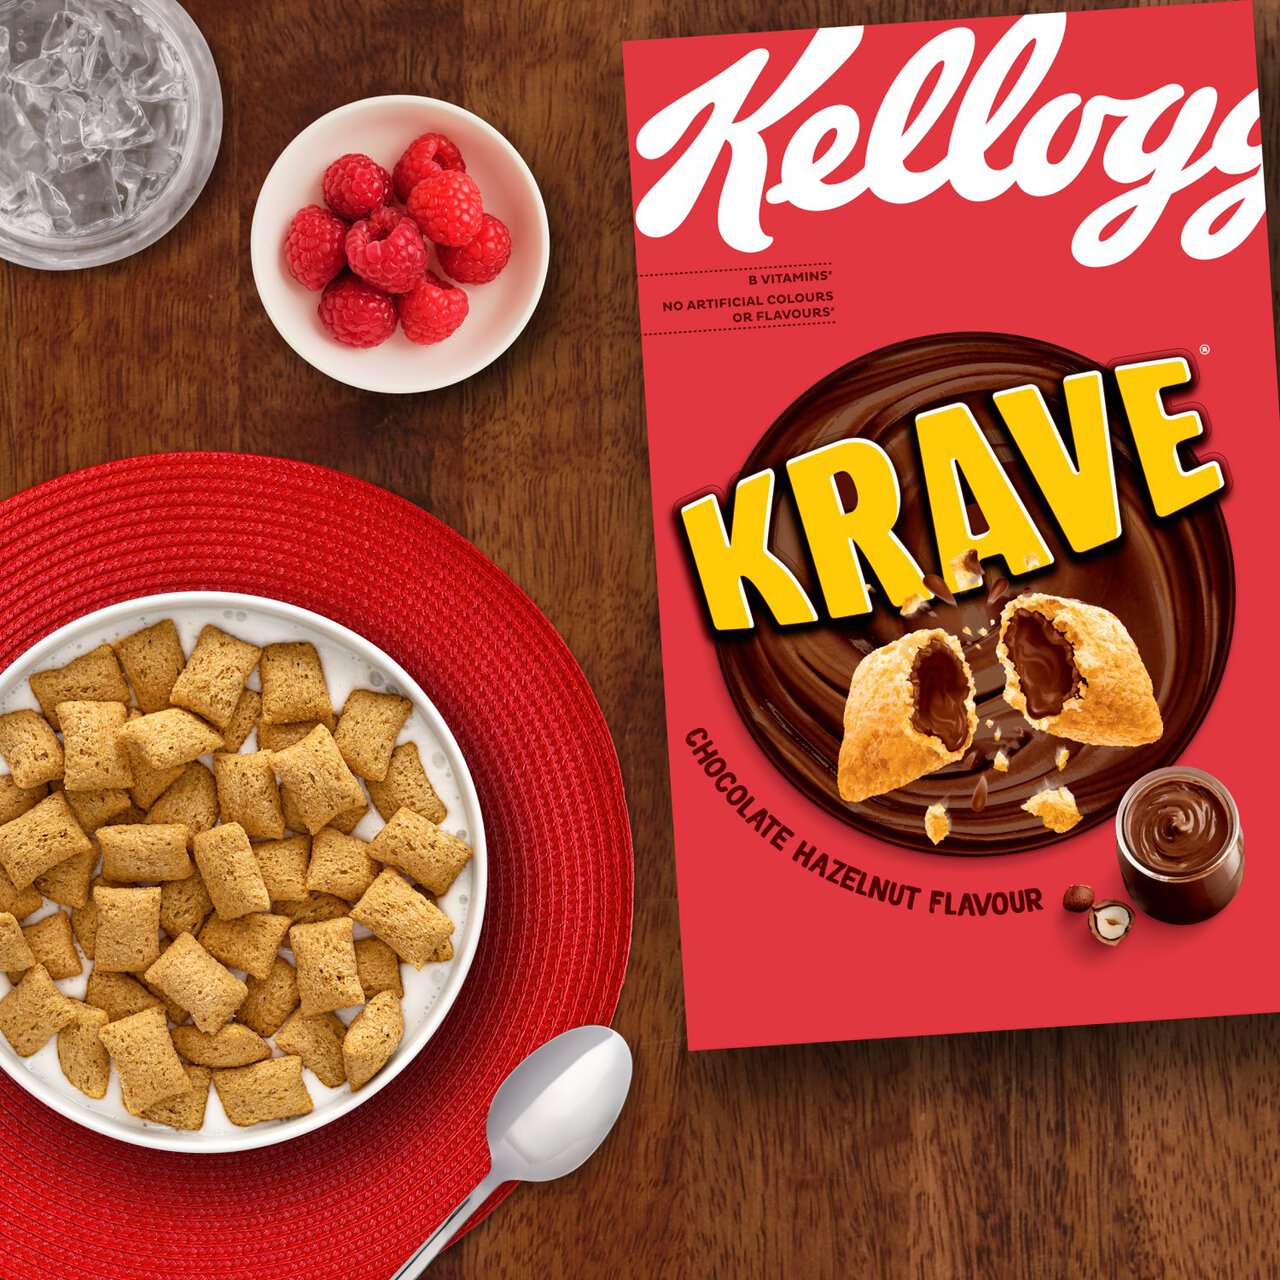 Cereales con chocolate y avellana Kellogg's Krave caja 410 g -  Supermercados DIA